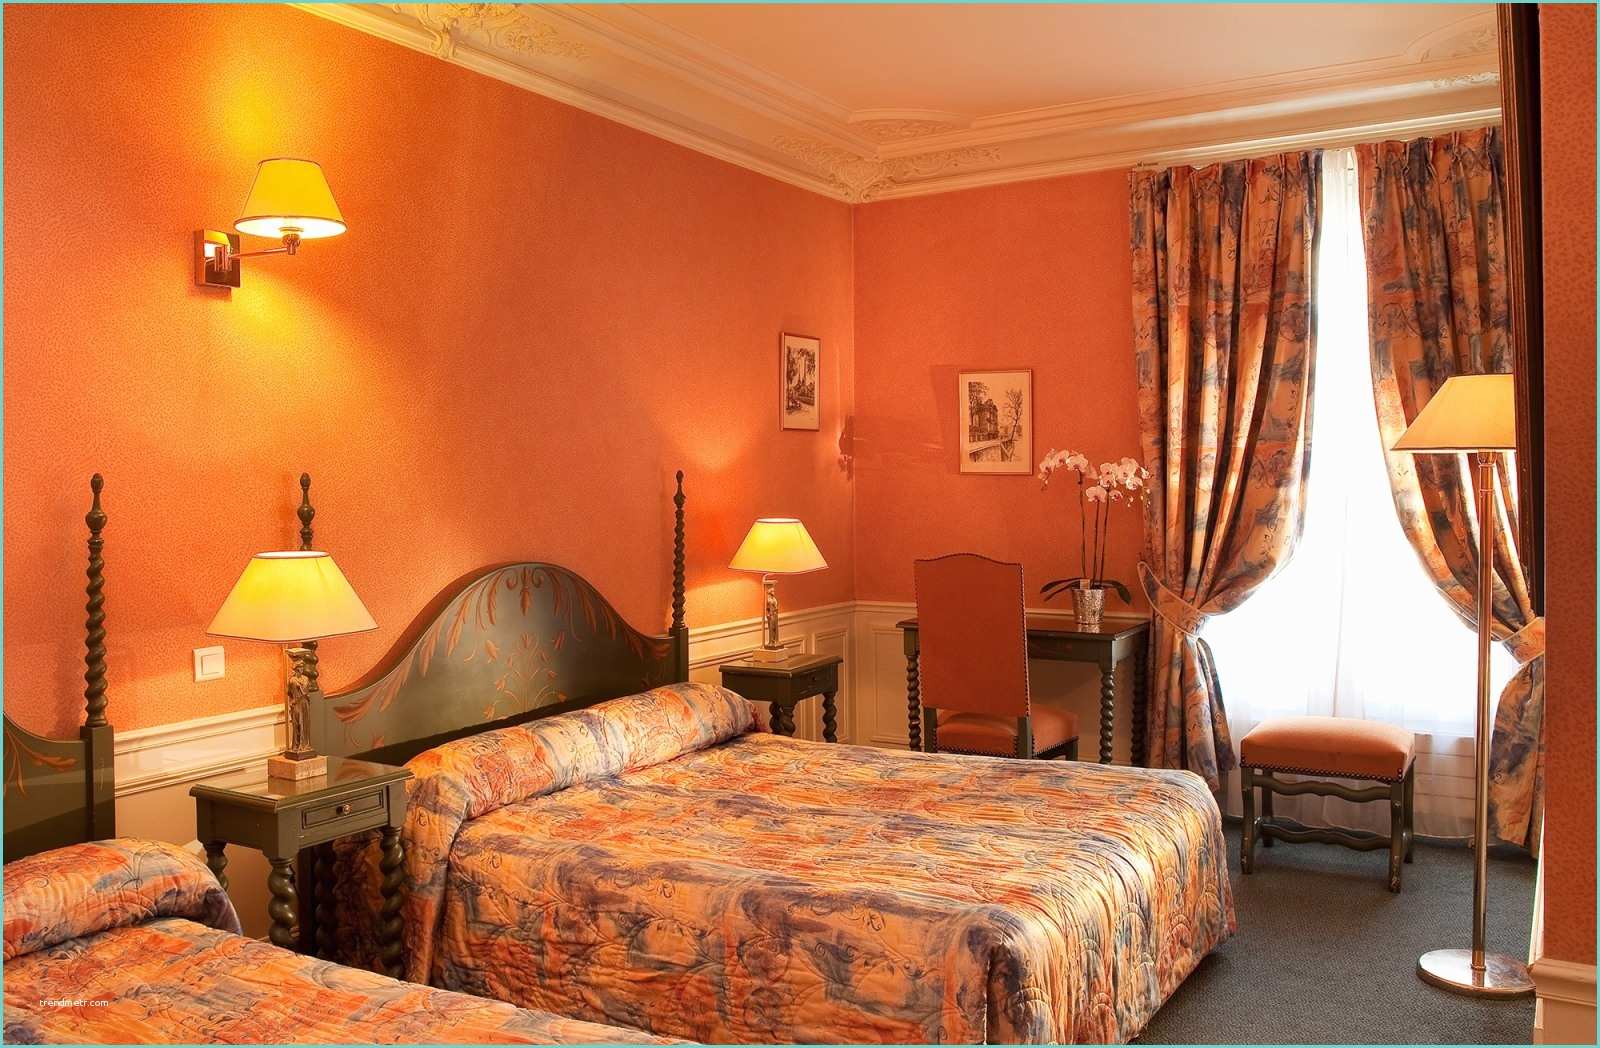 Hotel Romantique Paris Hôtel Saint Jacques Paris – Chambres – Hôtel Romantique Paris